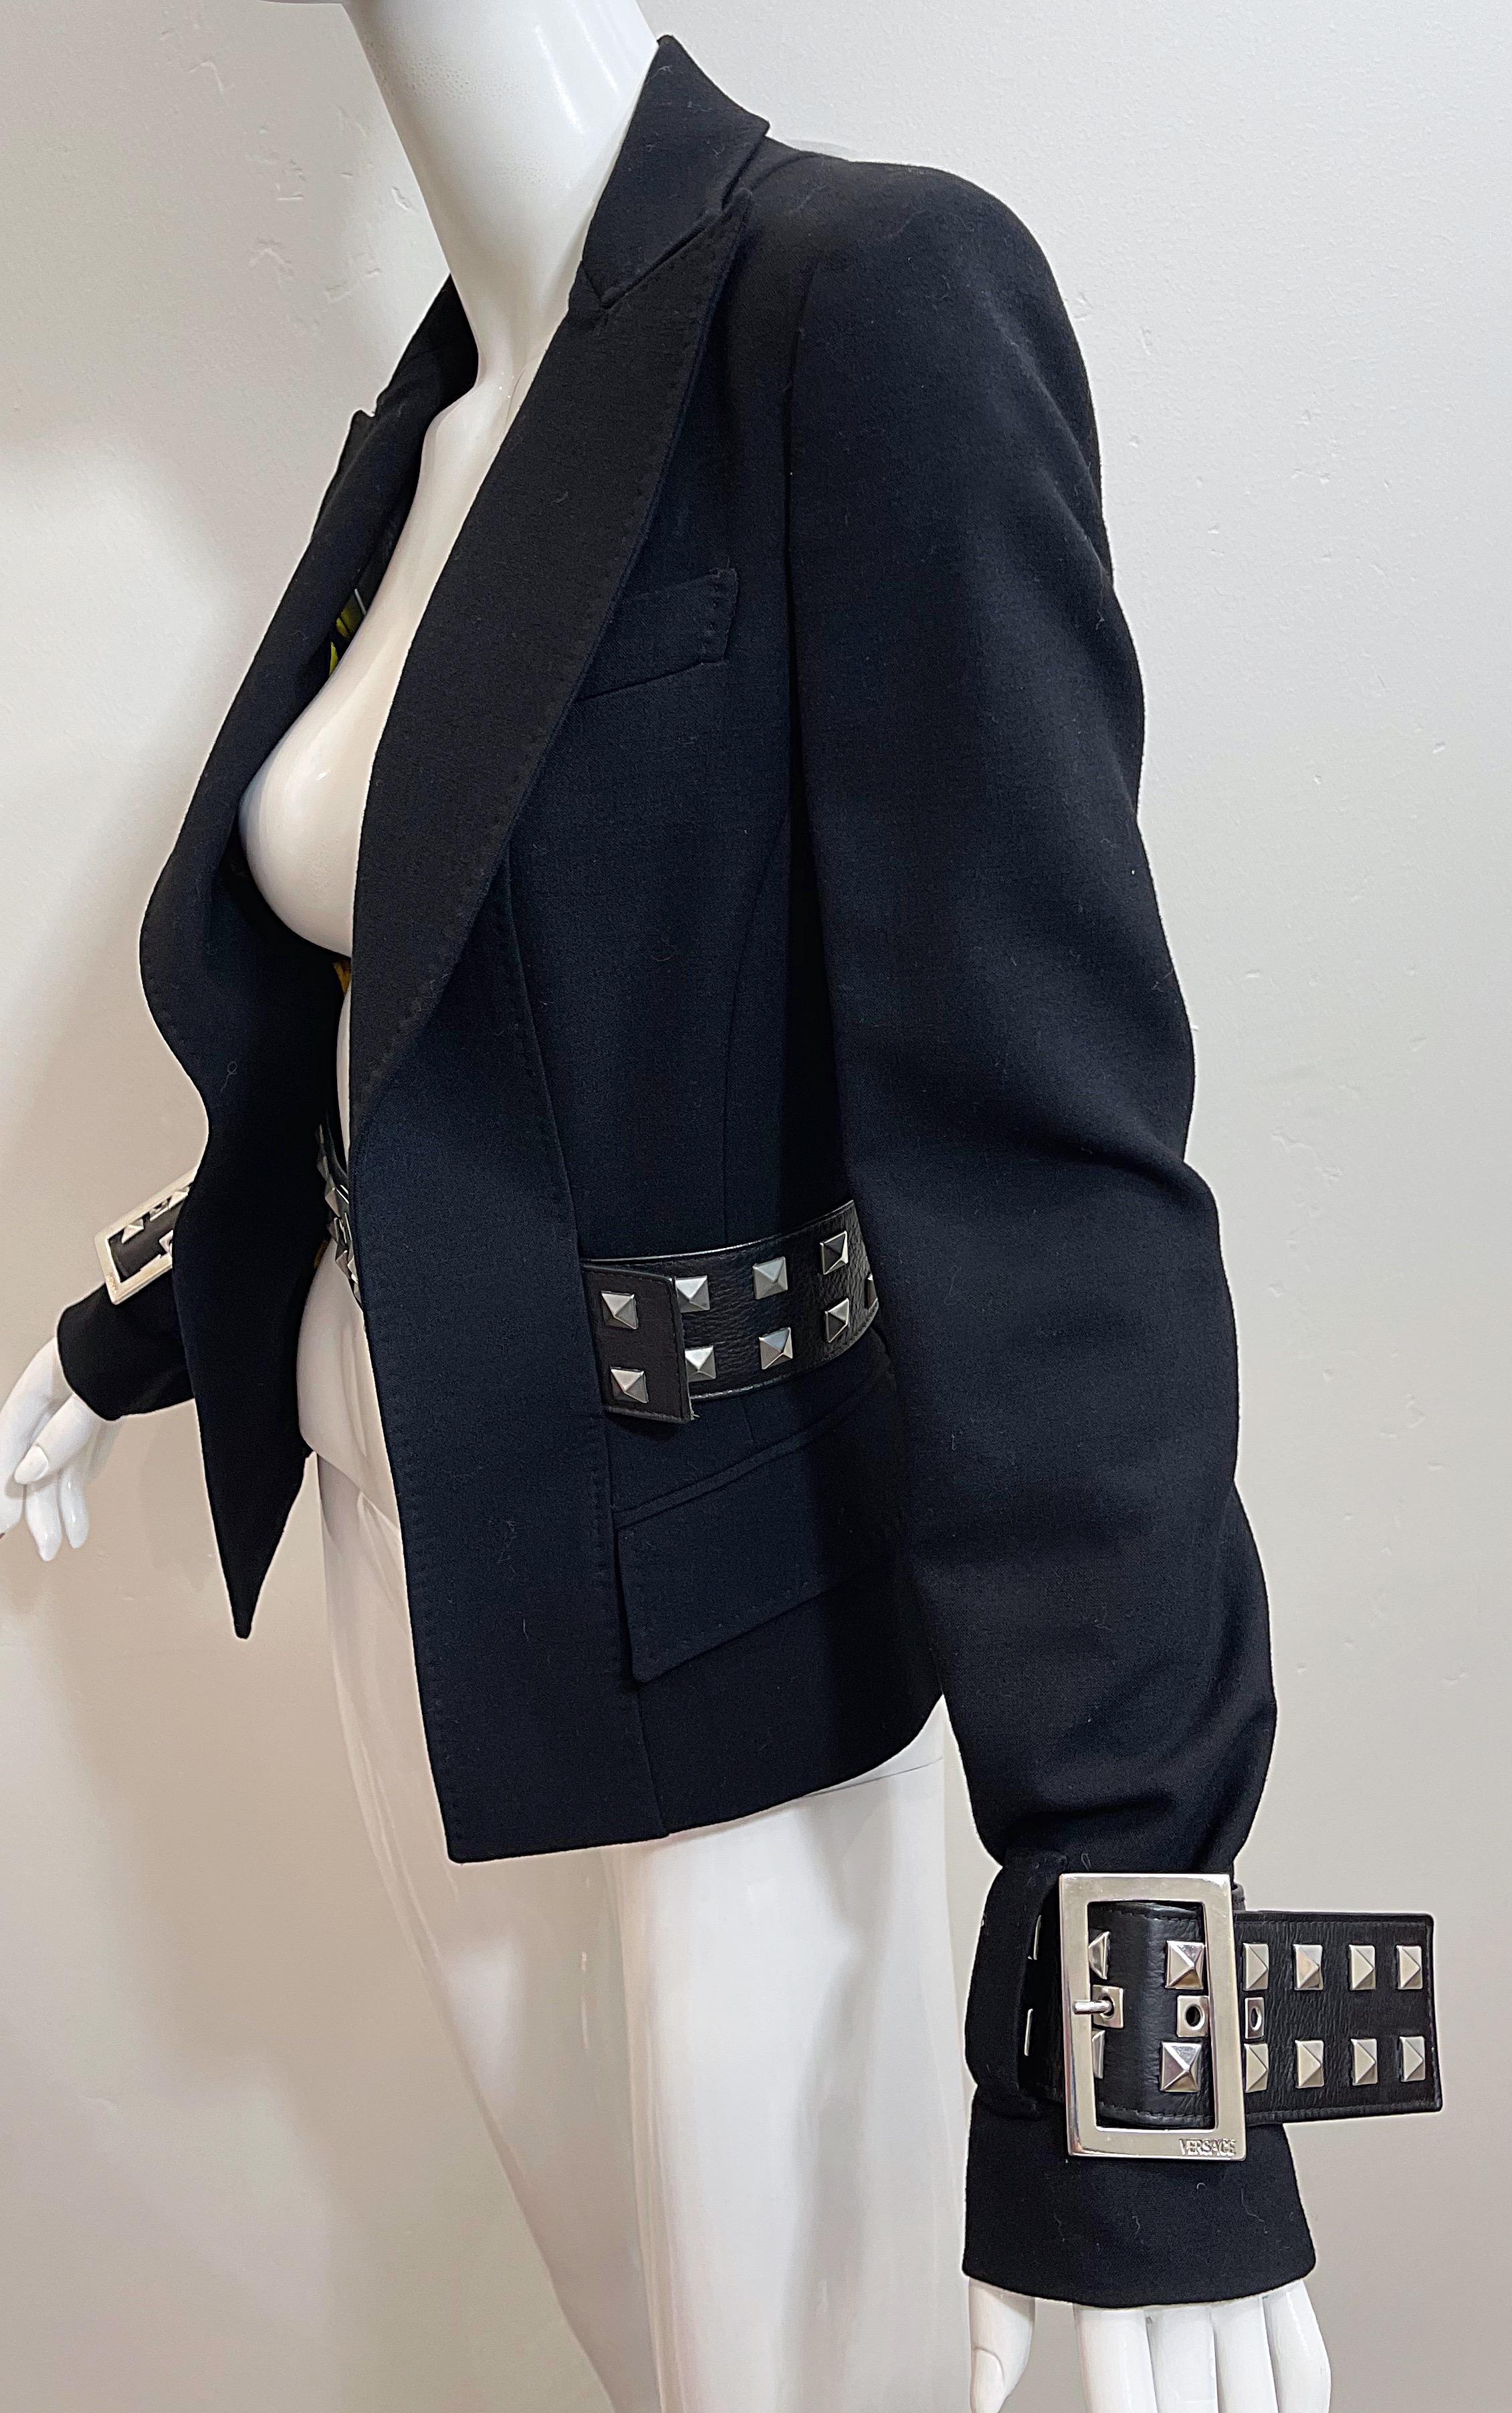 Gianni Versace 2000s Y2K Bondage Inspired Size 44 / 8 Belted Blazer Jacket 3